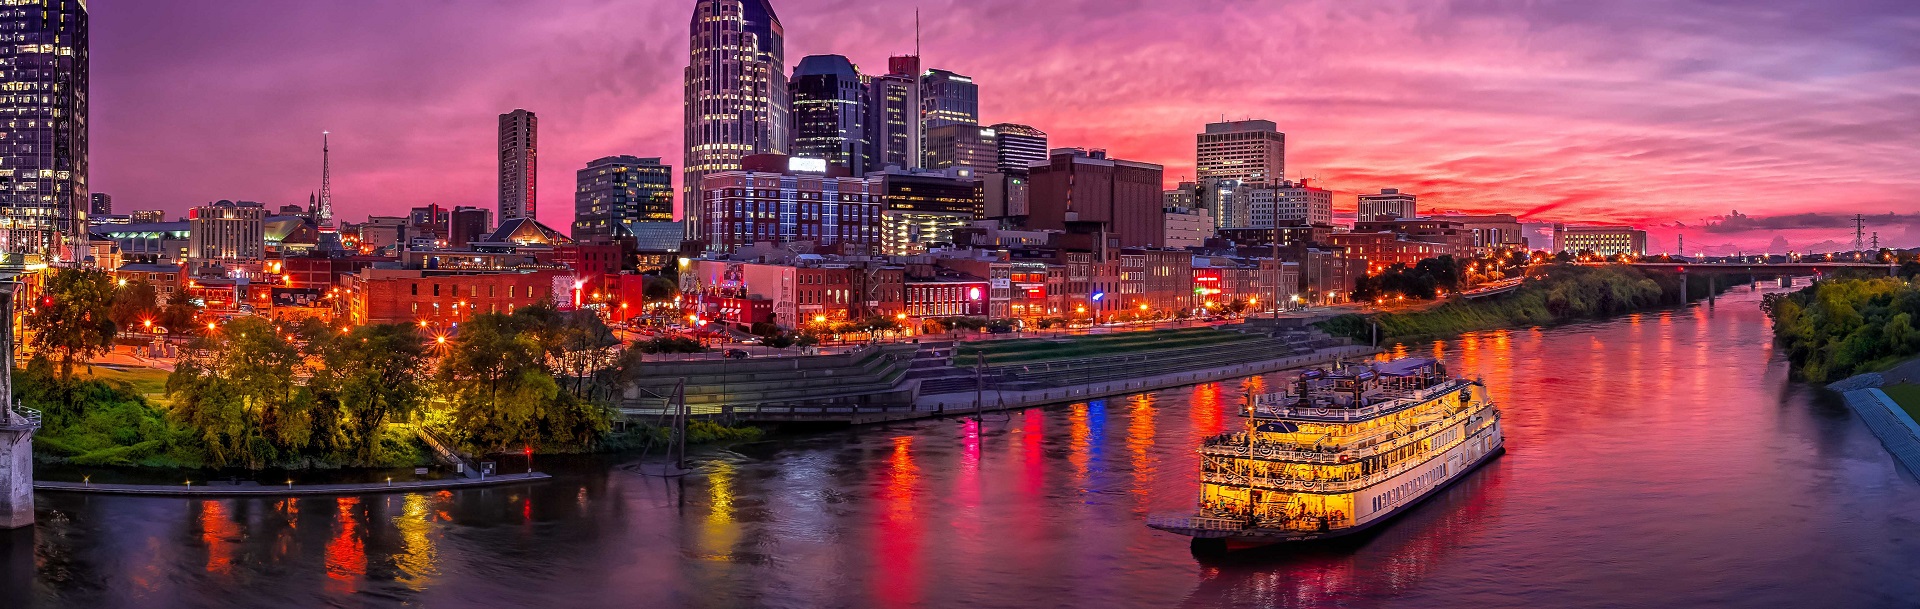 Nashville - Tennessee